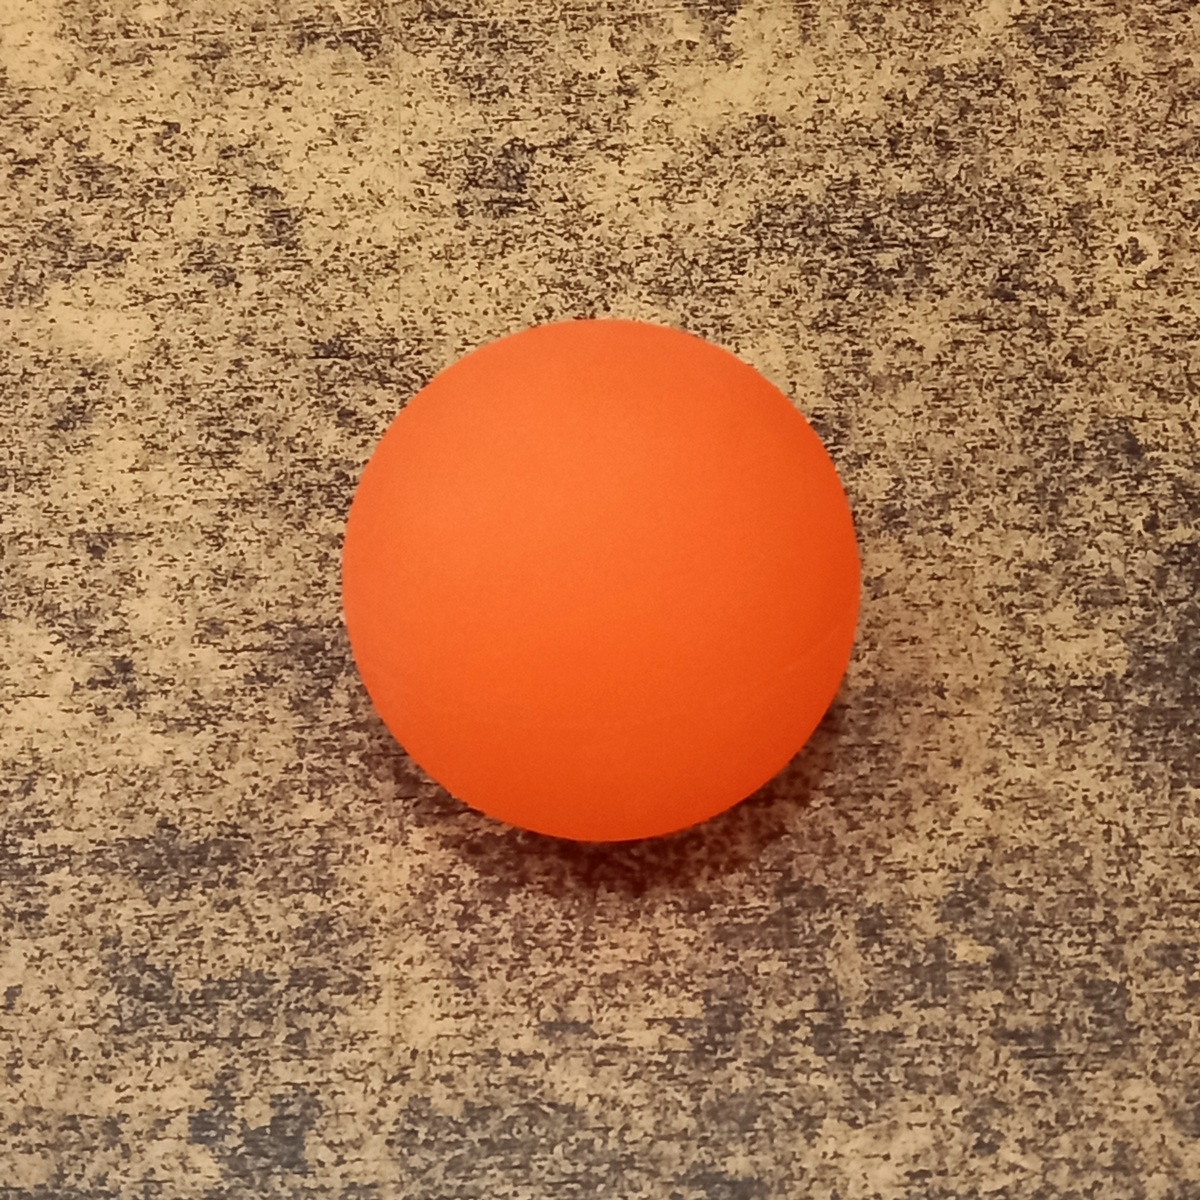 ratatam balle rebondissante hibou orange une idee cadeau jeu enfant chez ugo et lea  (3)